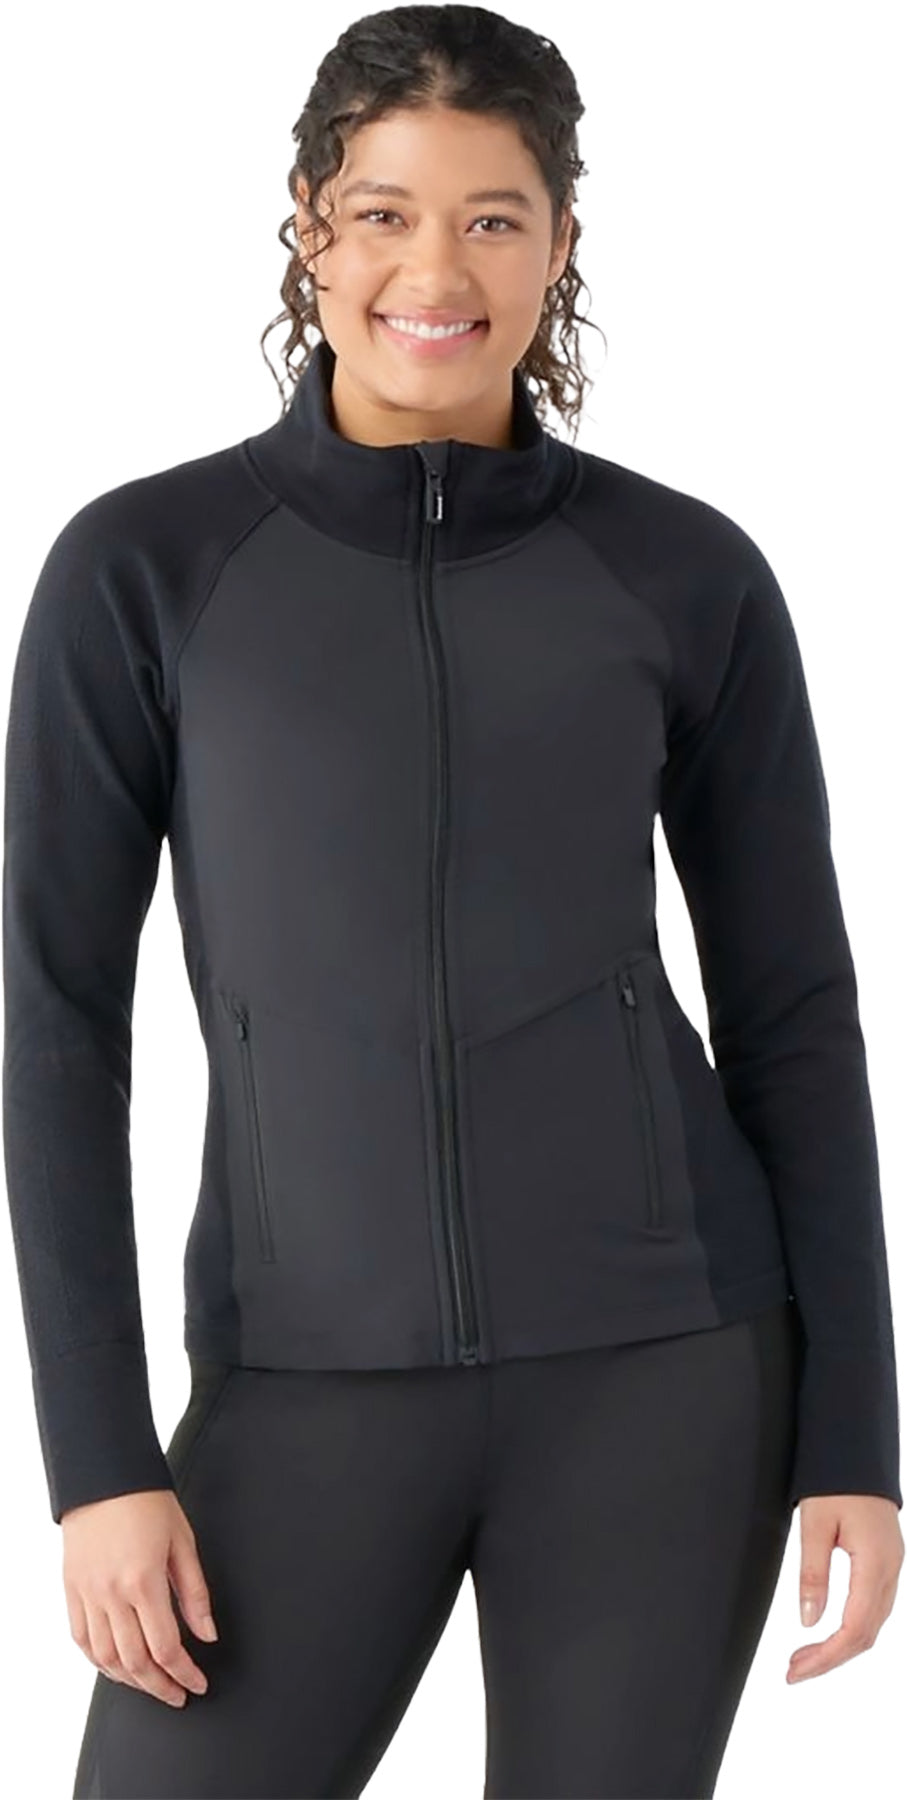 Smartwool Women's Intraknit Merino Sport Full Zip Jacket - Fresh